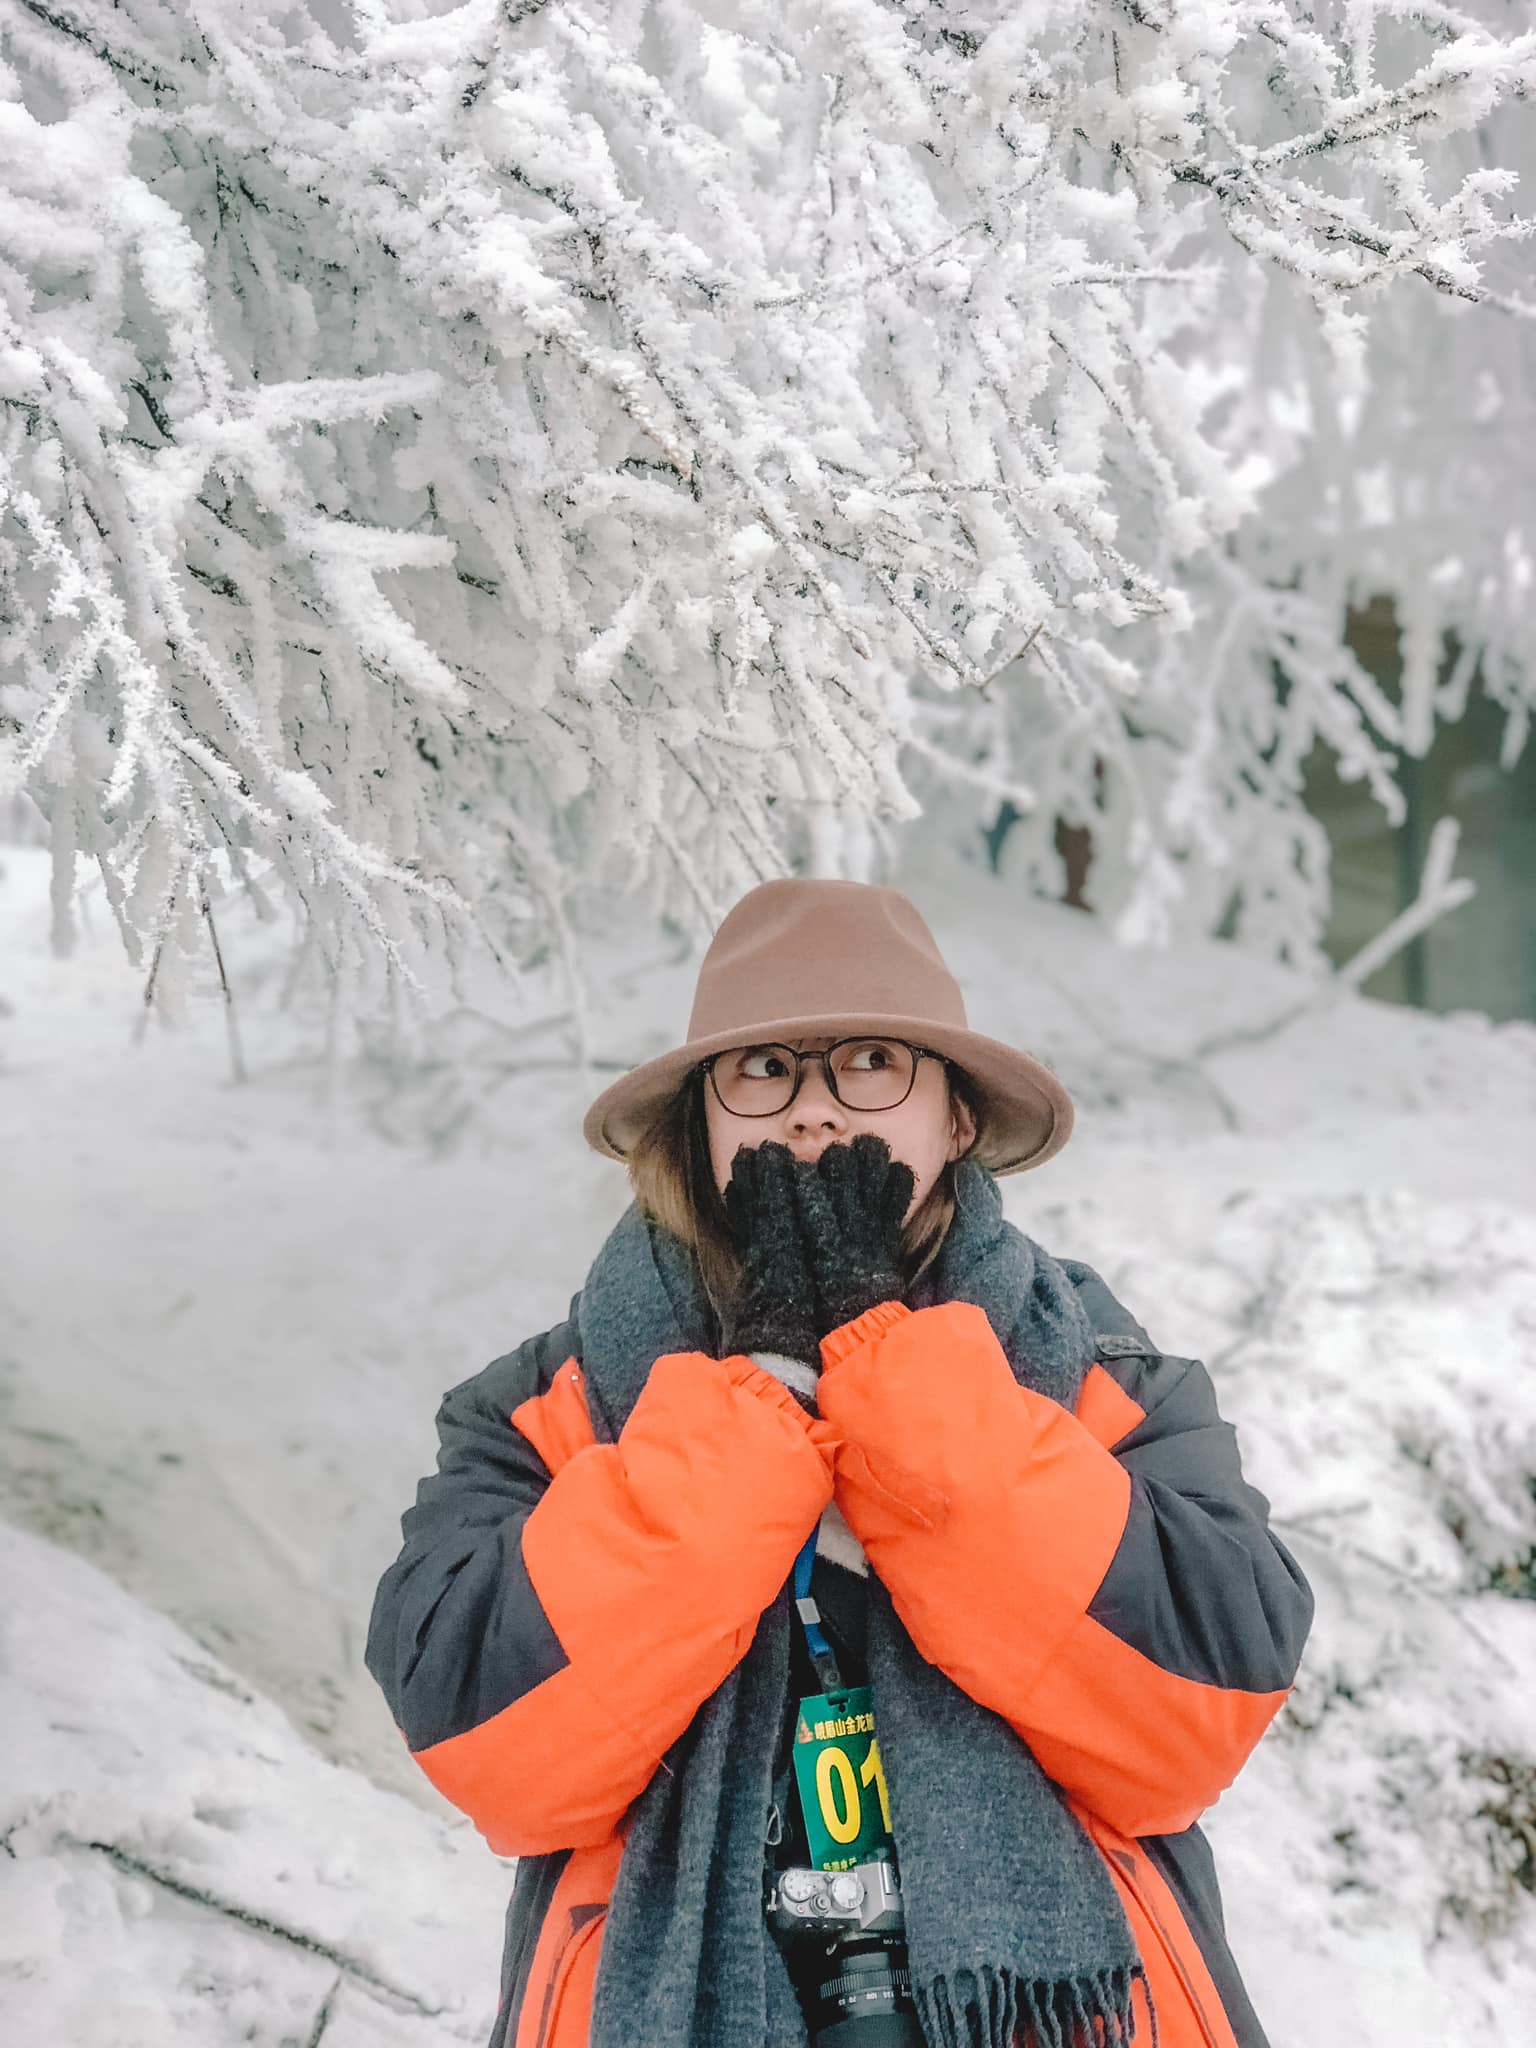 Chú ý trang phục khi đi săn tuyết để đảm bảo an toàn sức khỏe